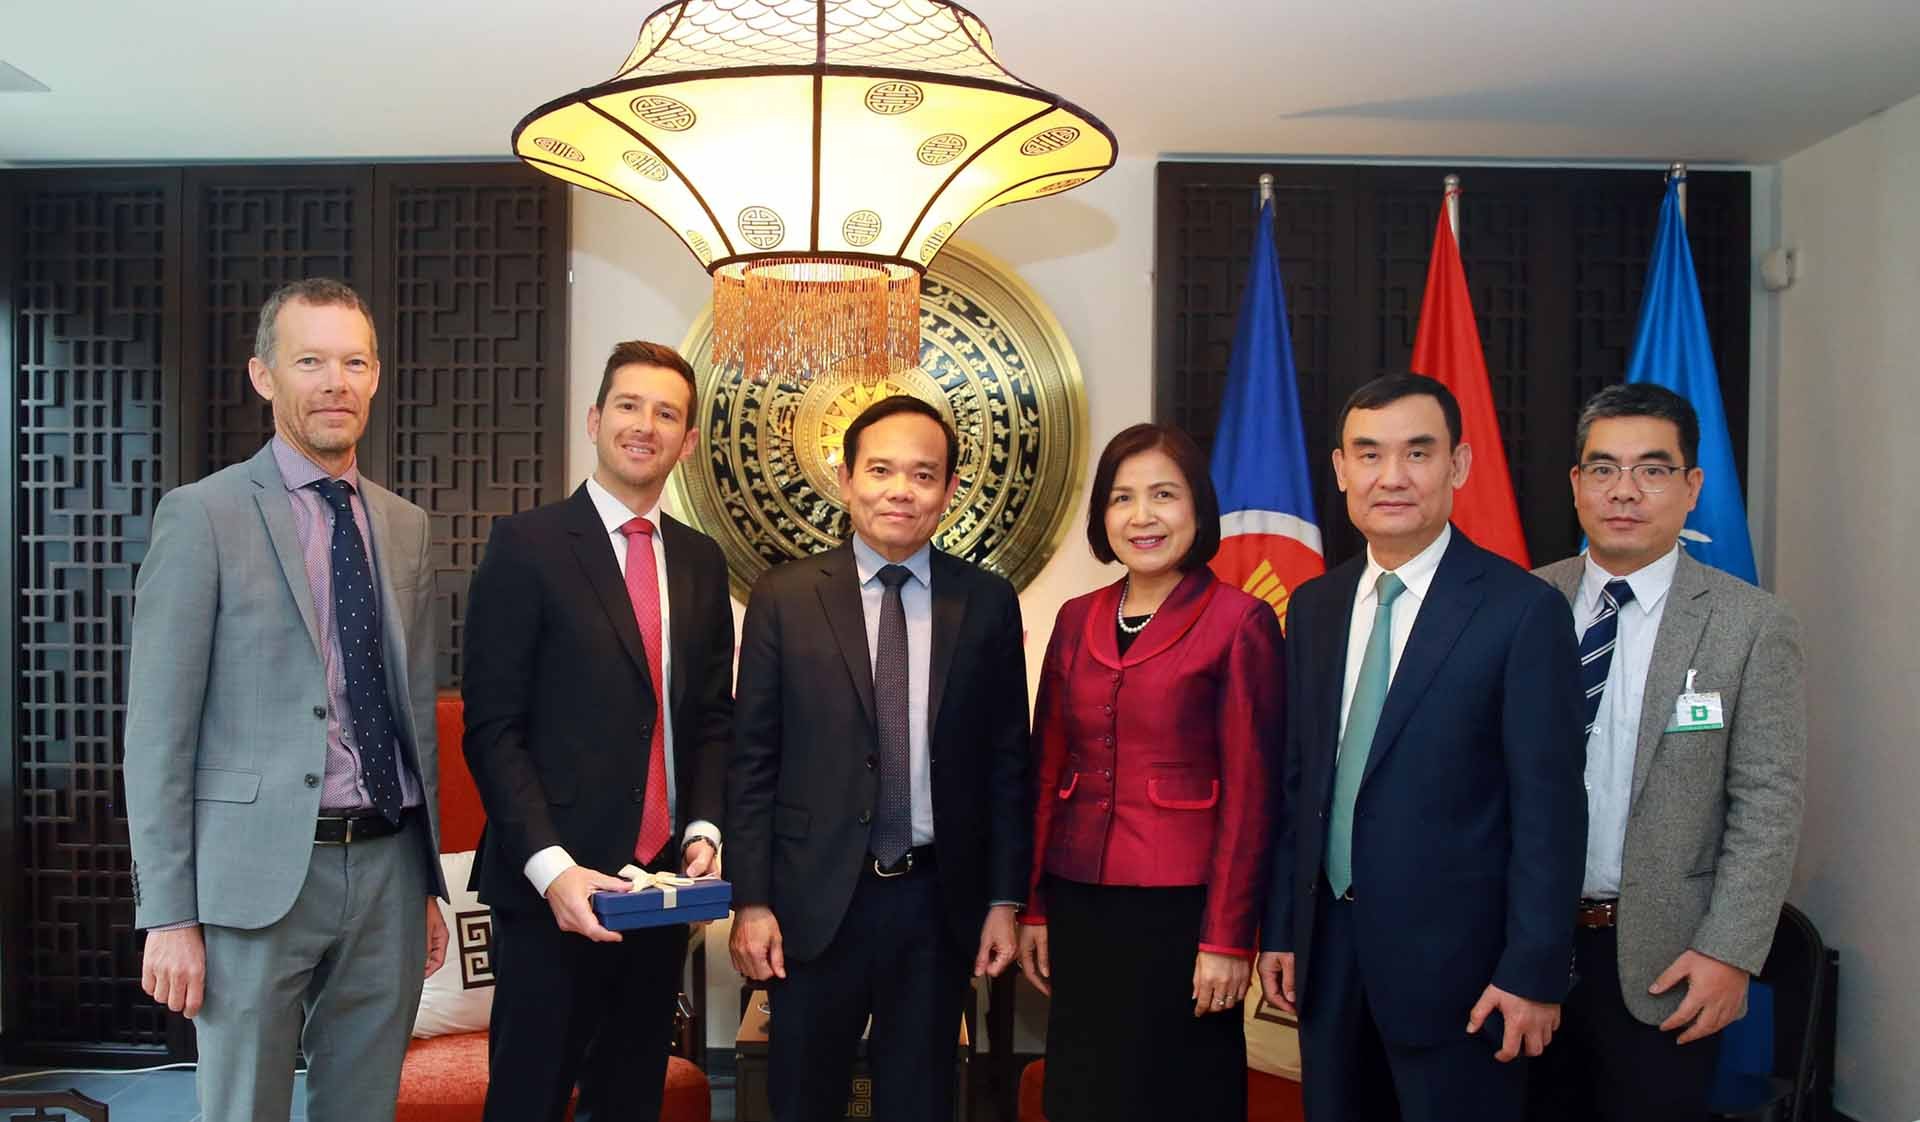 Phó Thủ tướng Trần Lưu Quang tiếp Phó Chủ tịch LEGO Edward Lewin (thứ 2, bên trái) tại trụ sở Phái đoàn Thường trực Việt Nam tại Geneva, Thụy Sỹ. (Nguồn: VGP)